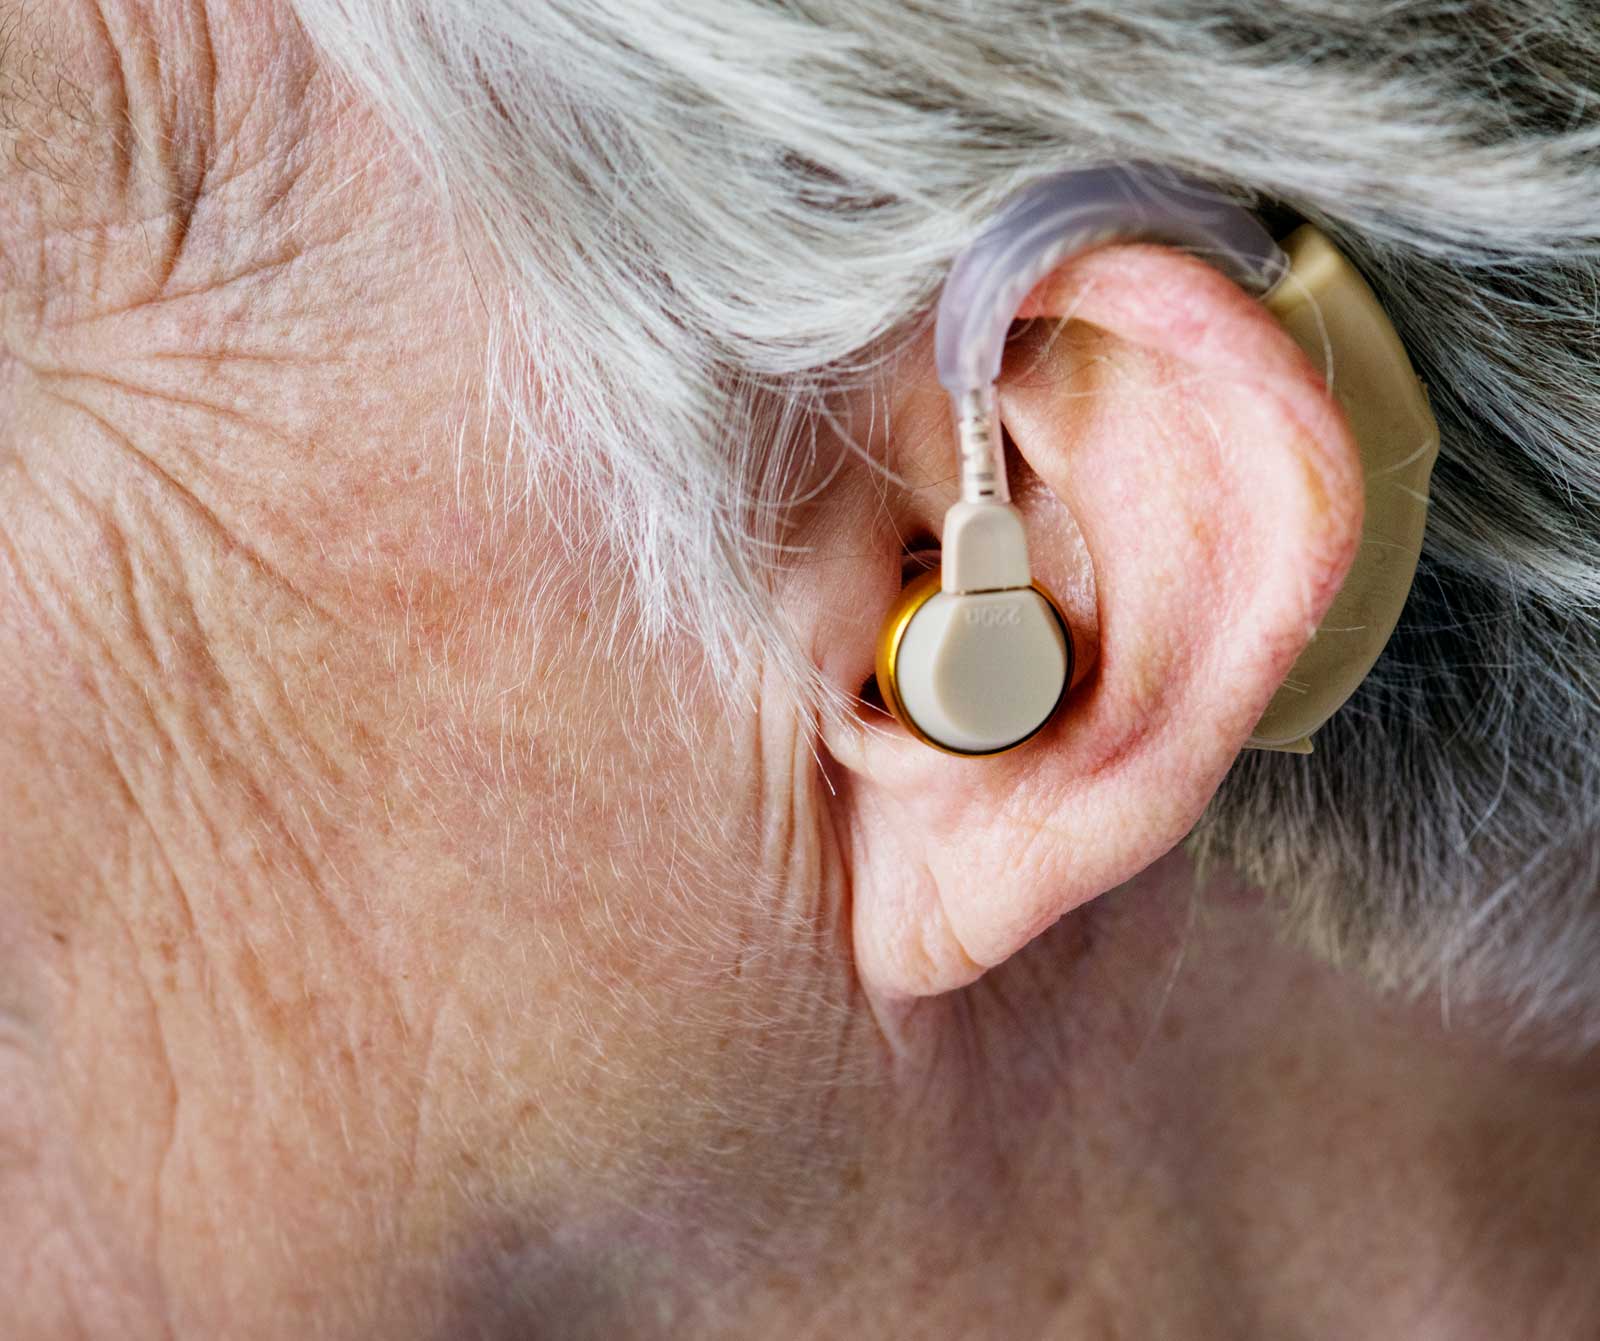 Apparecchi acustici Microear per sordi amplificatori acustici digitali Bte  ricaricabili Amplificatore sonoro per sordità Cuffie per sordità di alta  qualità